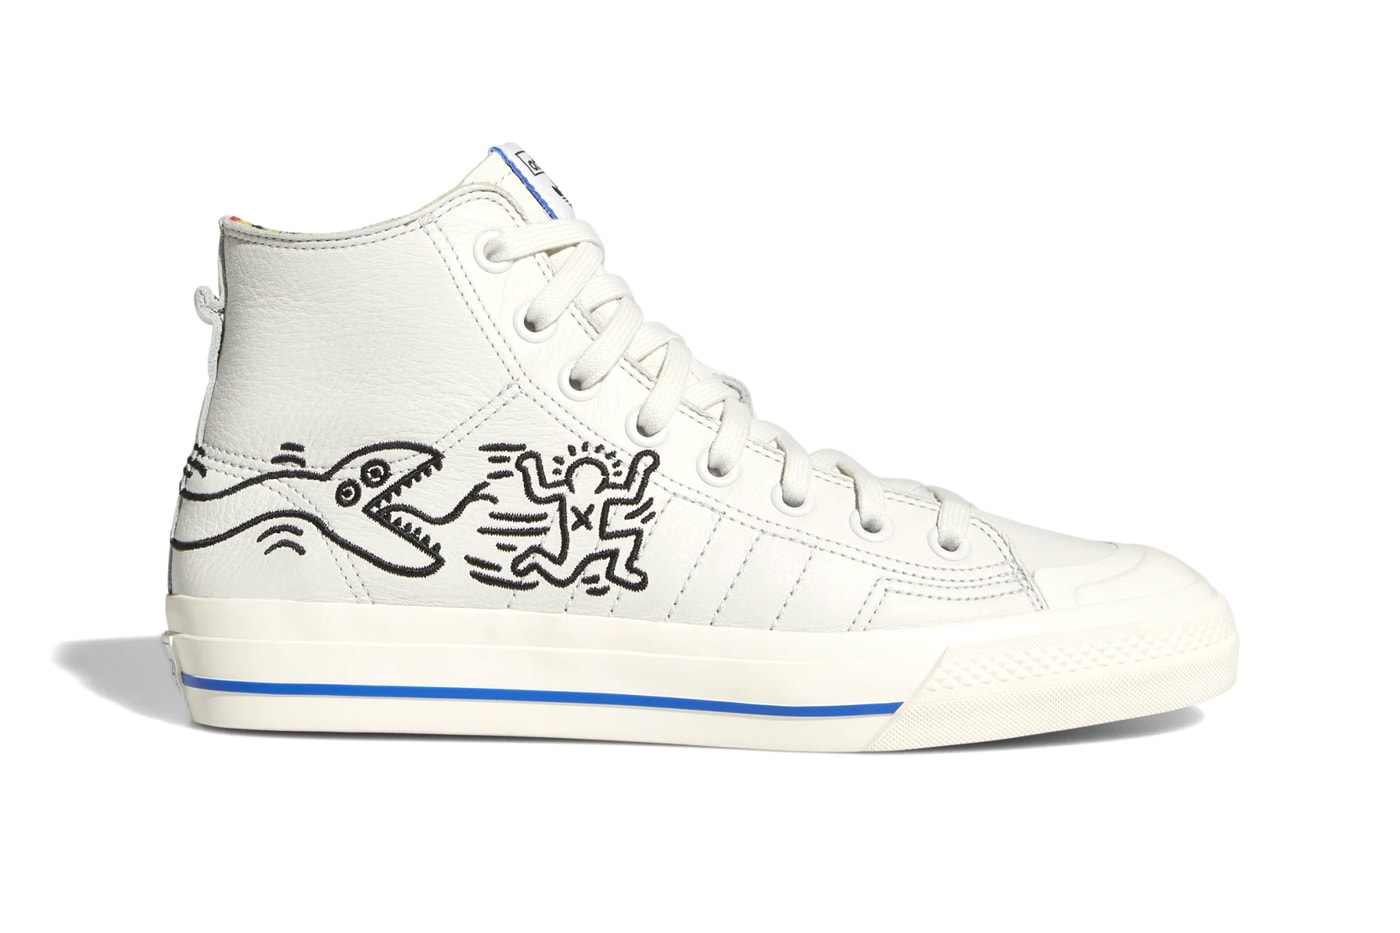 Keith Haring x Adidas